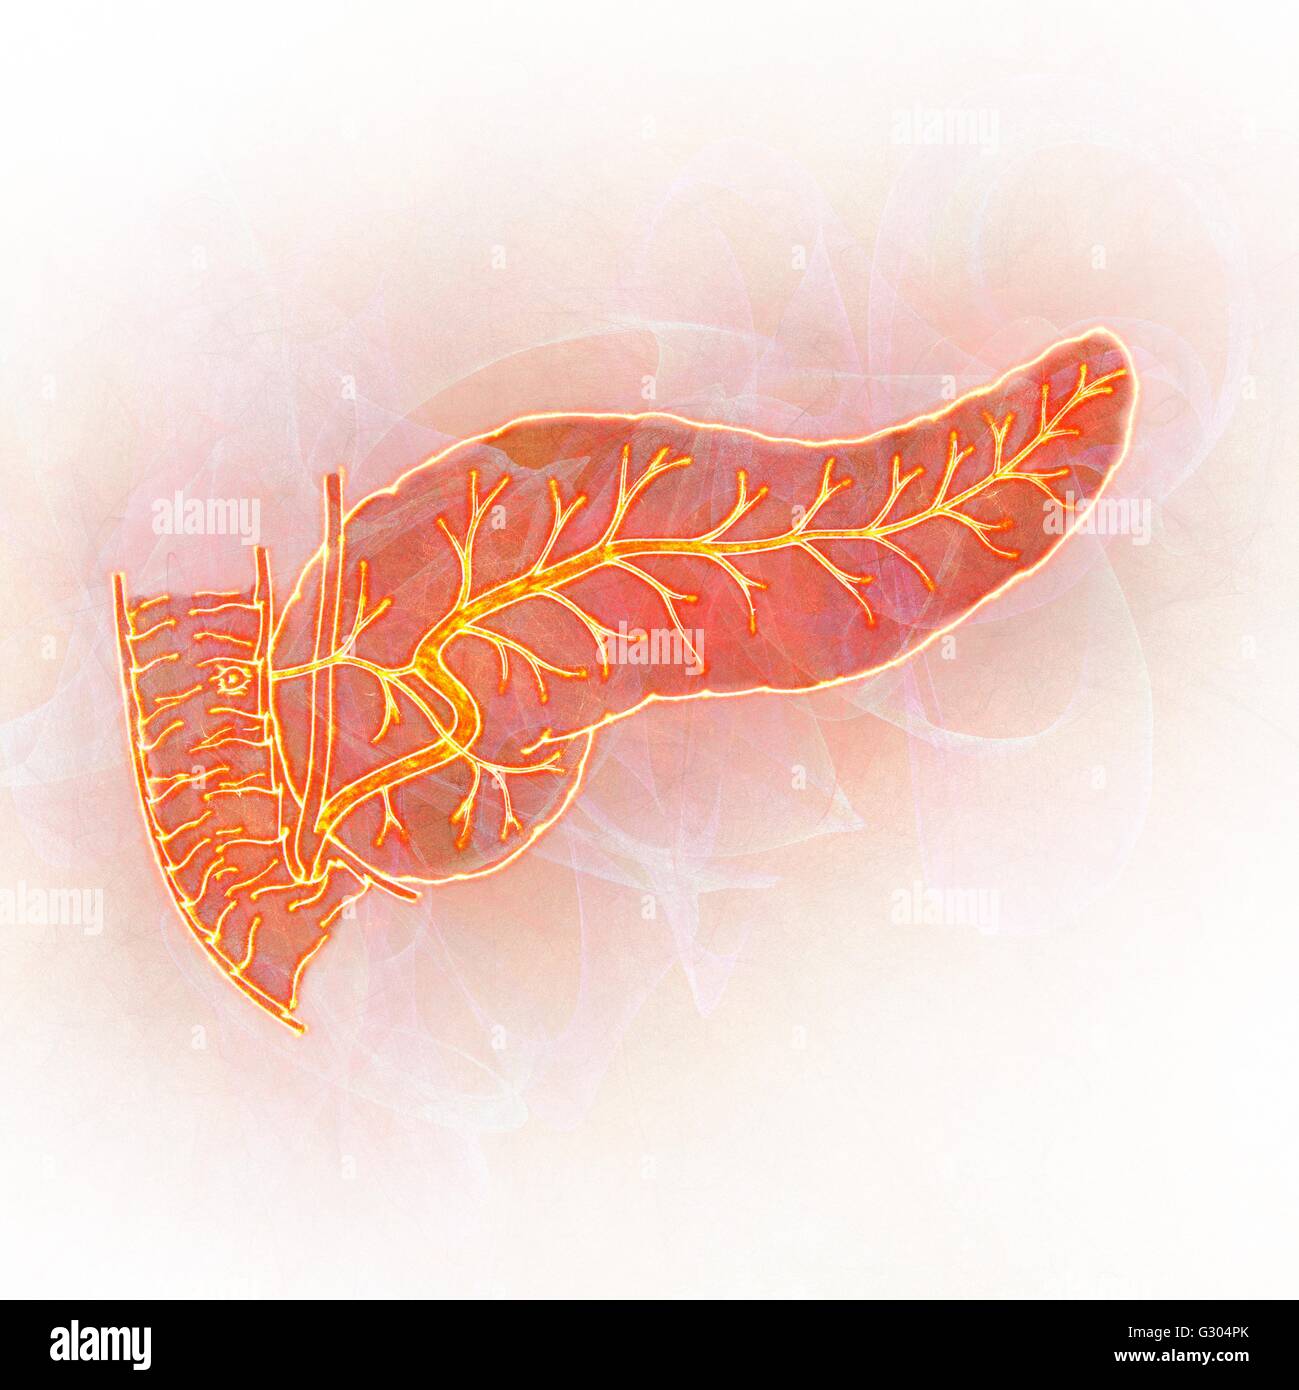 Pancreas umano, illustrazione astratta. Foto Stock